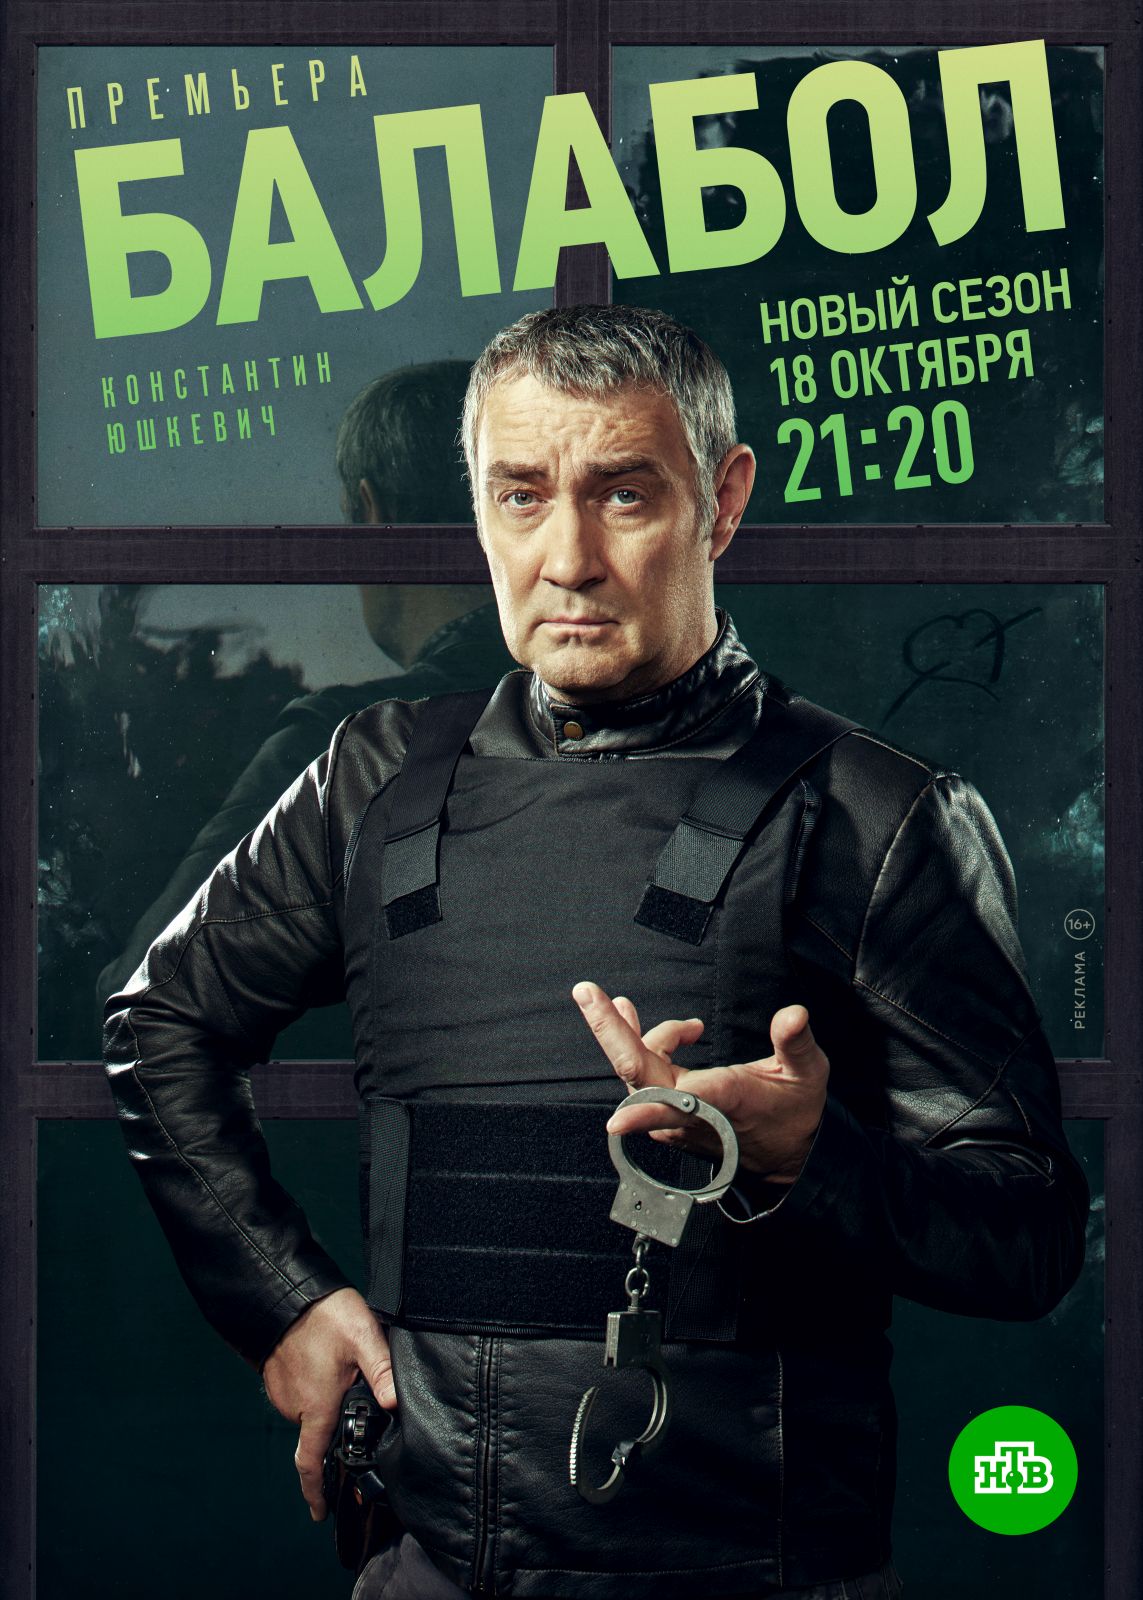 Пятый сезон «Балабола» с Константином Юшкевичем стартует 18 октября